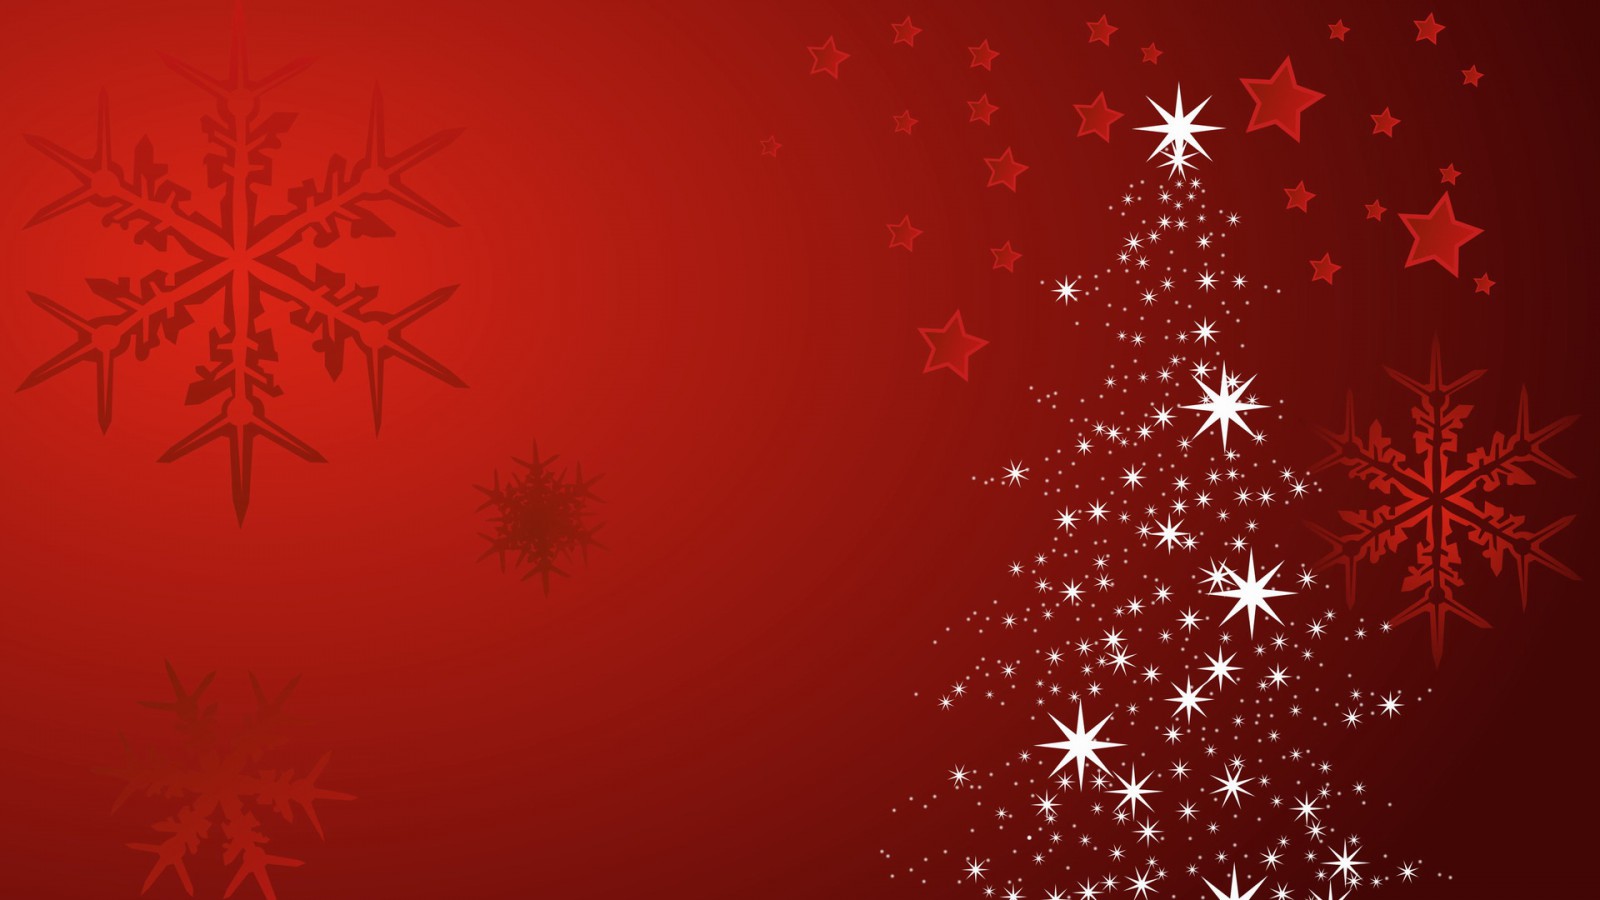 パッカードベルの壁紙,赤,スノーフレーク,パターン,クリスマスの飾り,クリスマス・イブ